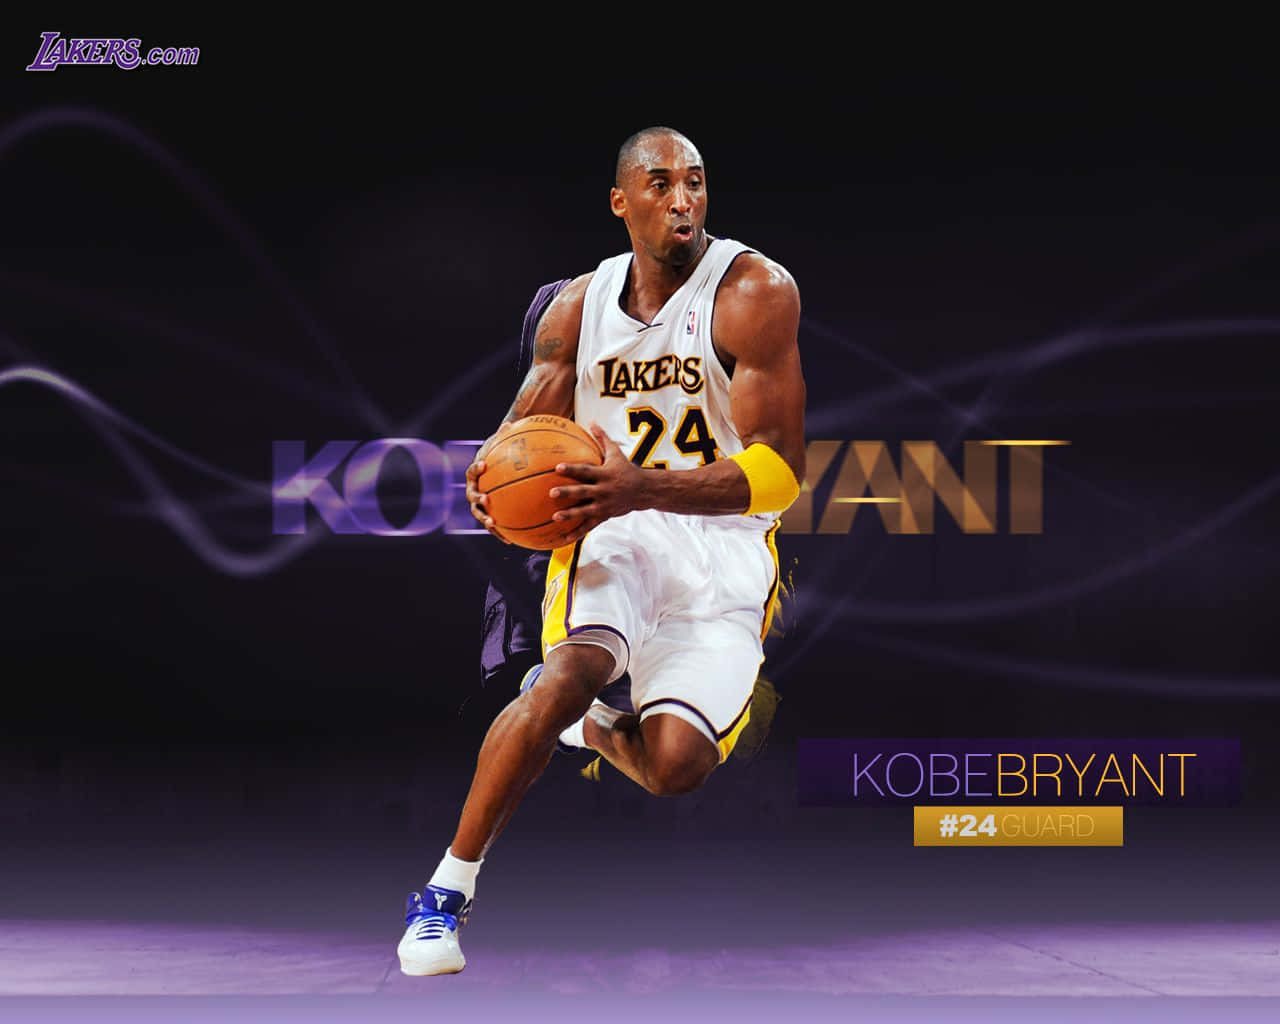 Kobe Bryant Wallpapers - Kobe Bryant Wallpapers